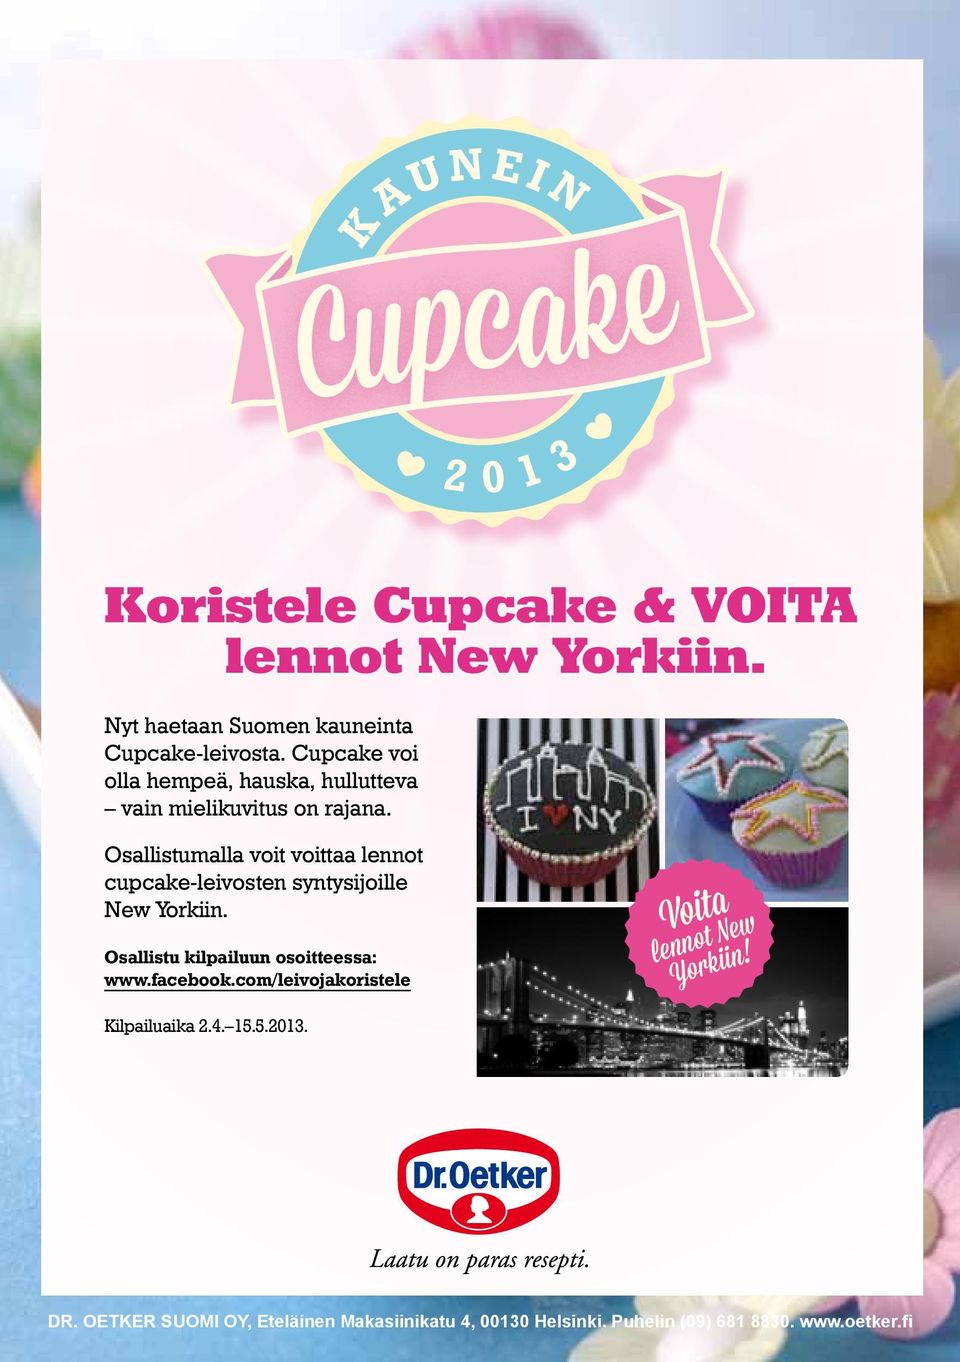 03 Osallistumalla voit voittaa lennot cupcake-leivosten syntysijoille New Yorkiin. Osallistu kilpailuun osoitteessa: www.facebook.